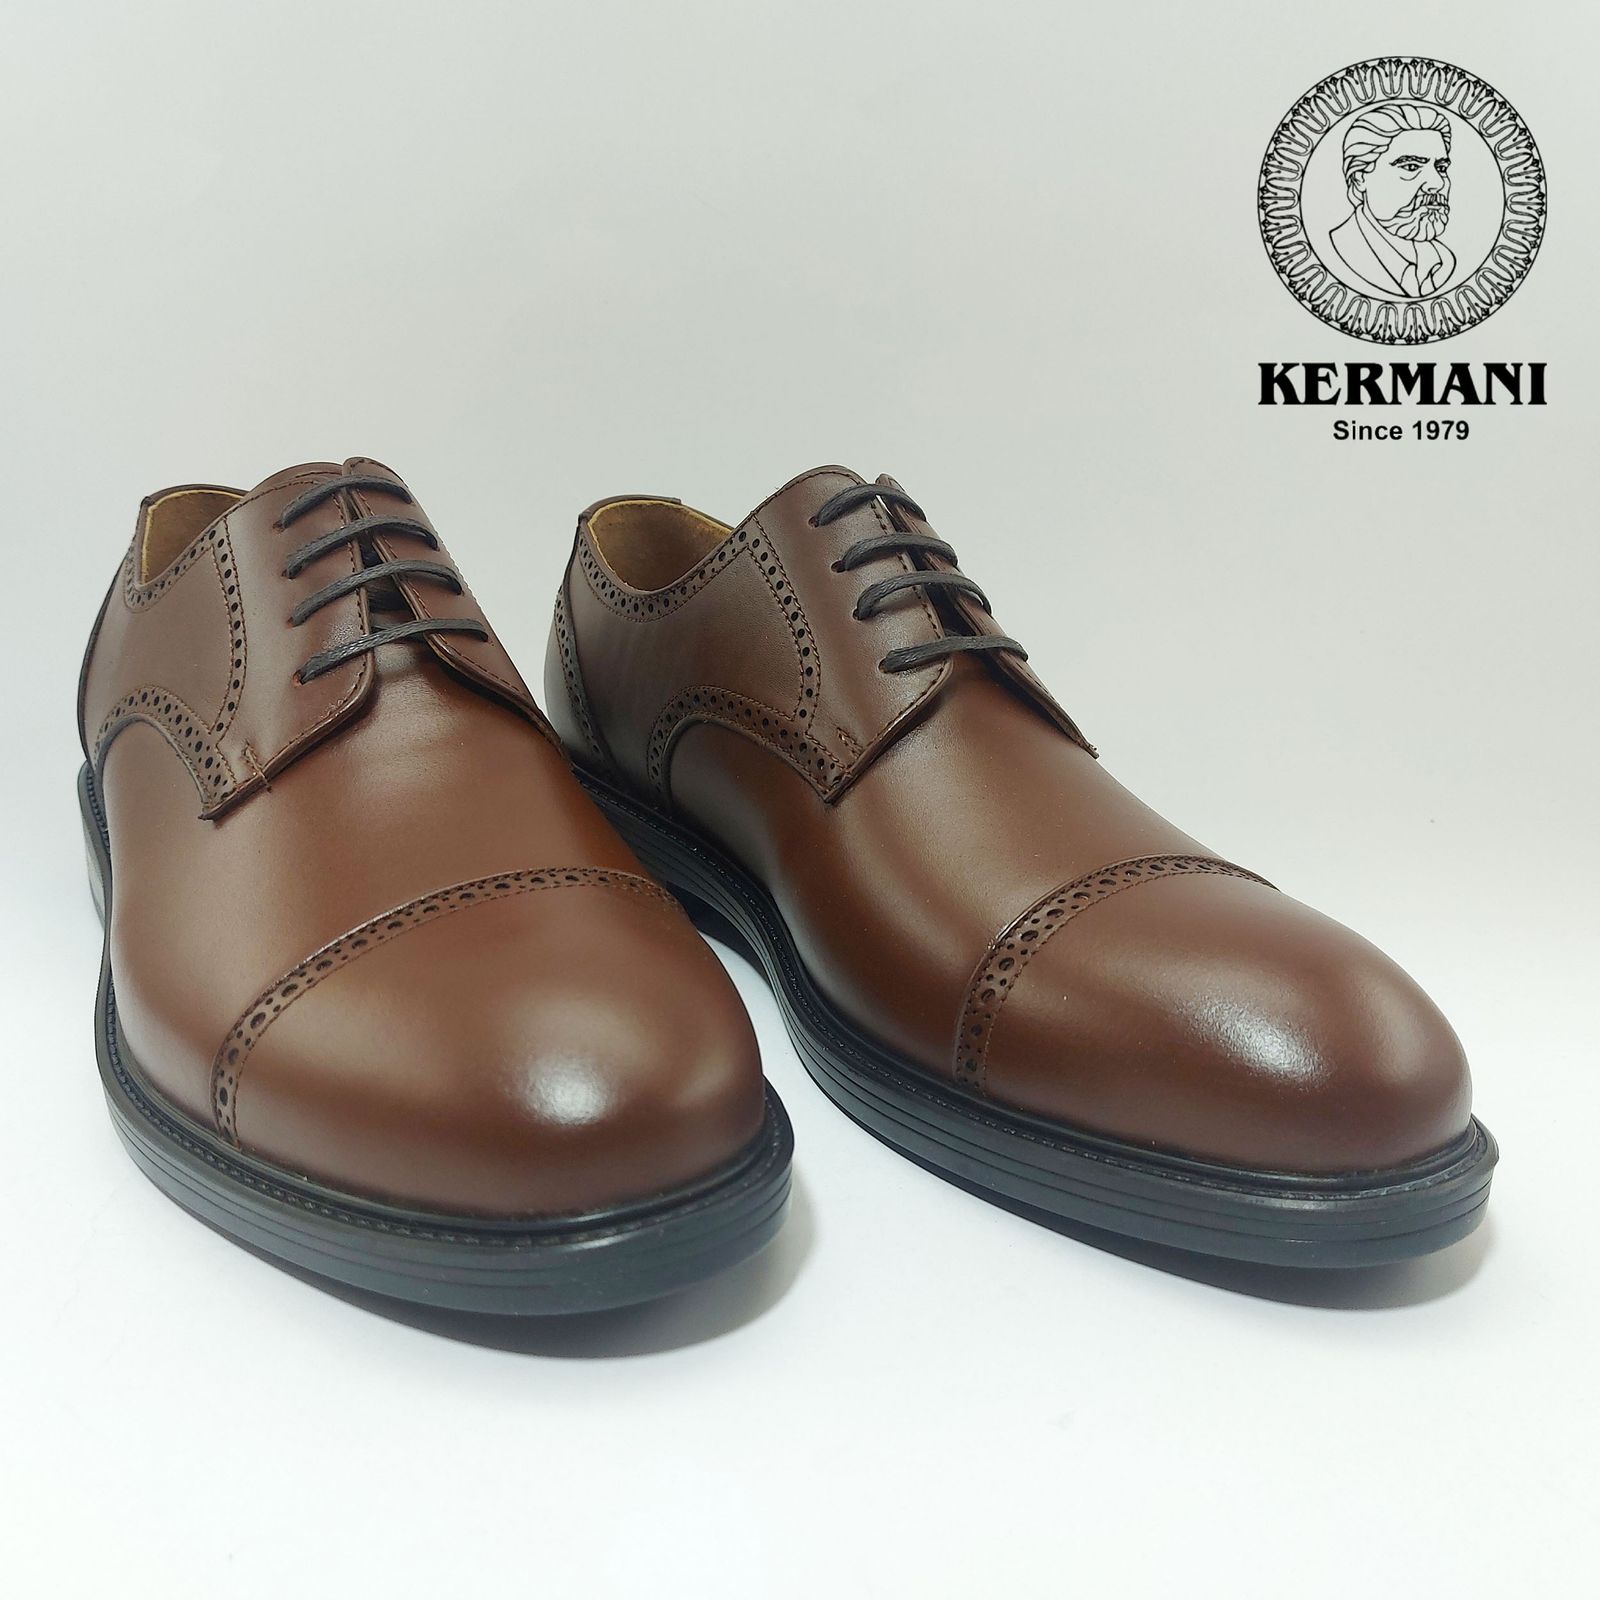 کفش مردانه کرمانی مدل چرم دستدوز طبیعی بِرِت کد 1062 رنگ قهوه ای -  - 6